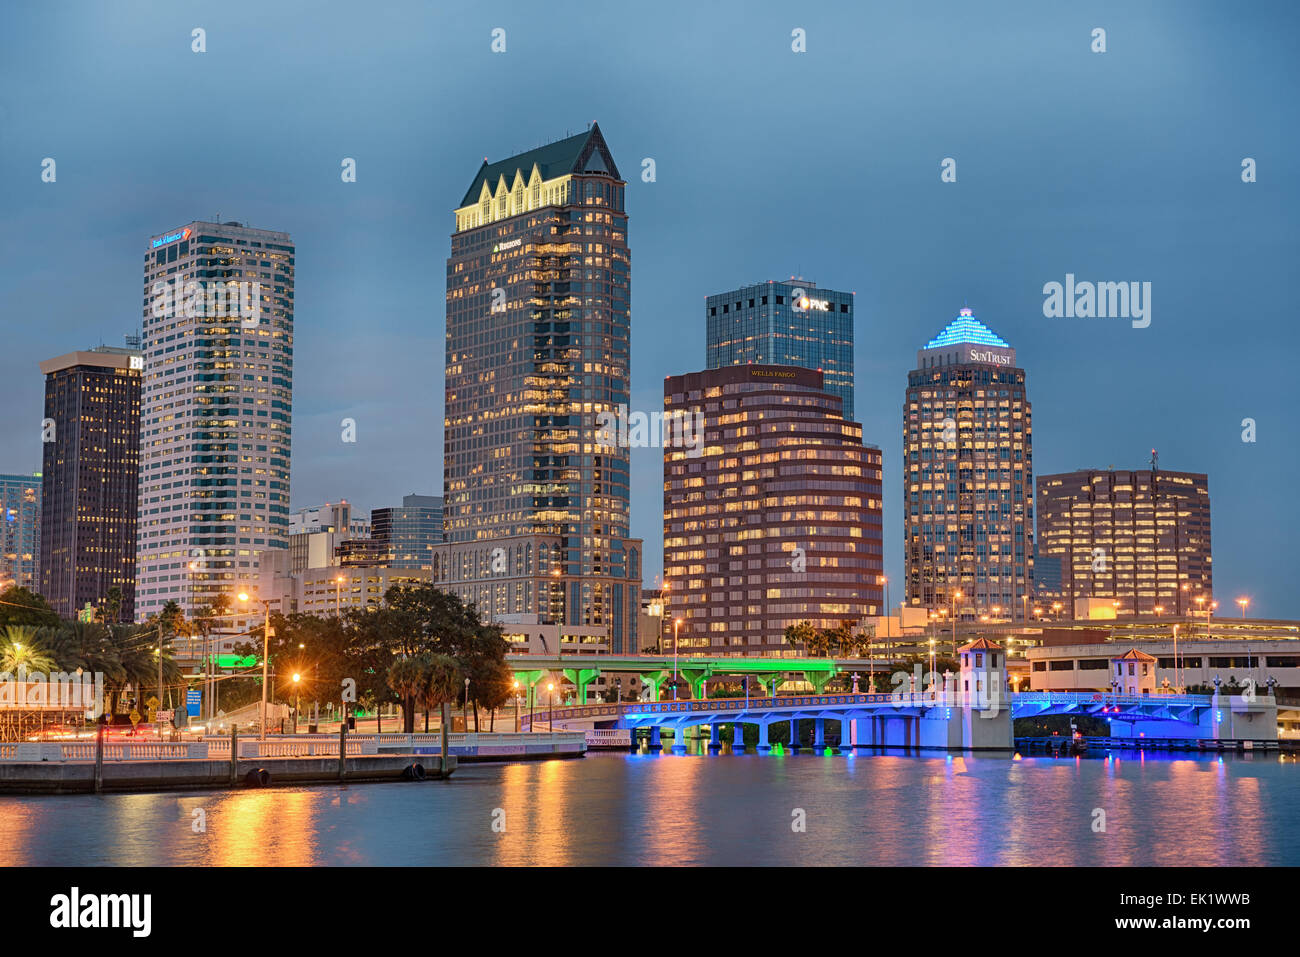 El perfil del centro de la ciudad de Tampa al atardecer Foto de stock